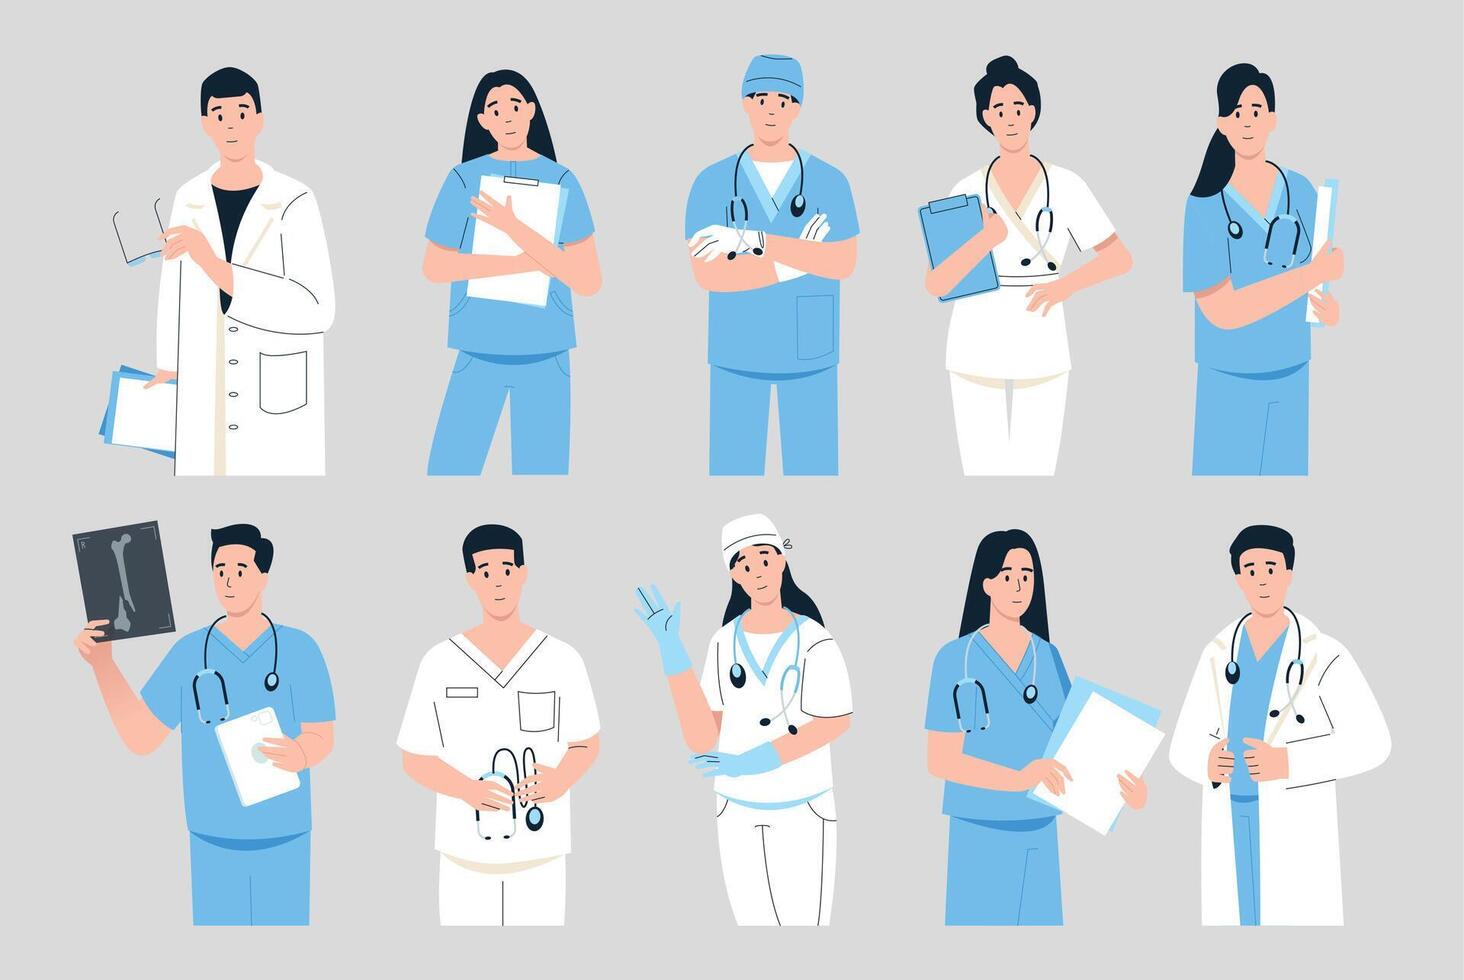 médico retratos dibujos animados médico practicantes en azul y blanco uniforme y con estetoscopios, médico clínica doctores cosa. vector conjunto